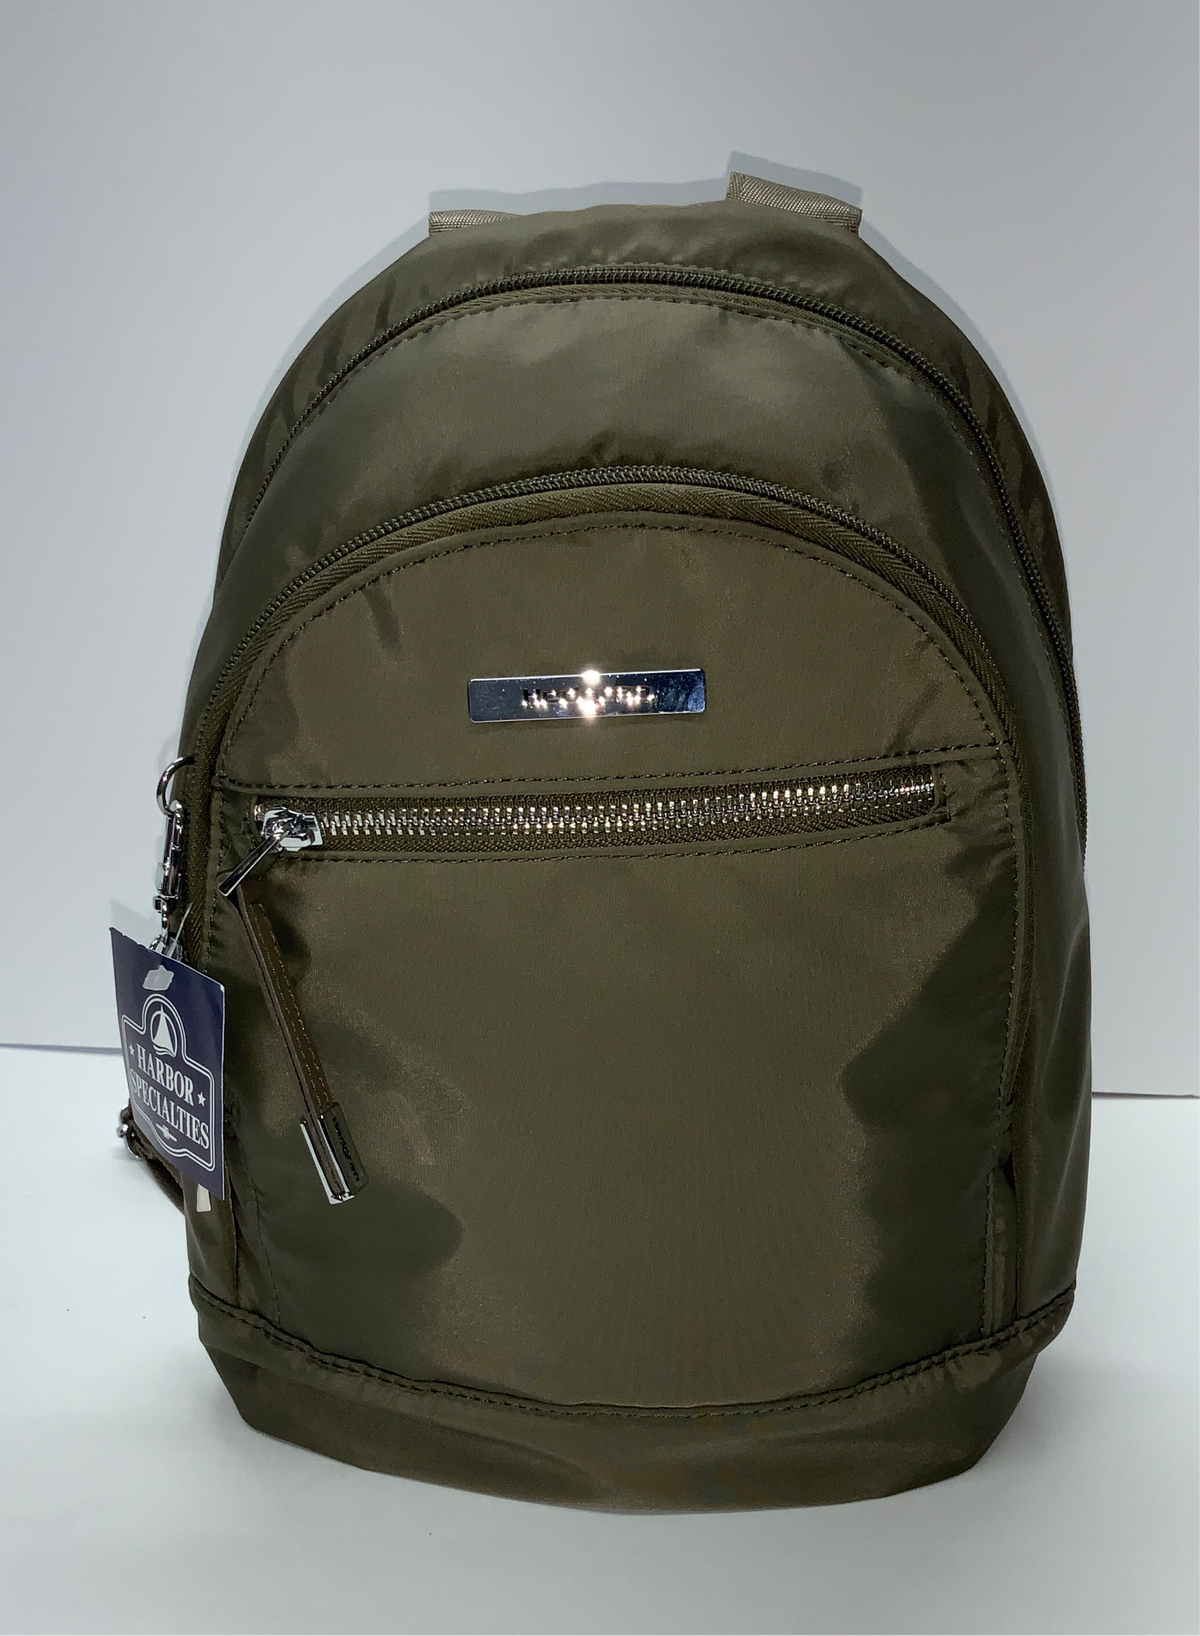 Aura Sheen Backpack wRFID